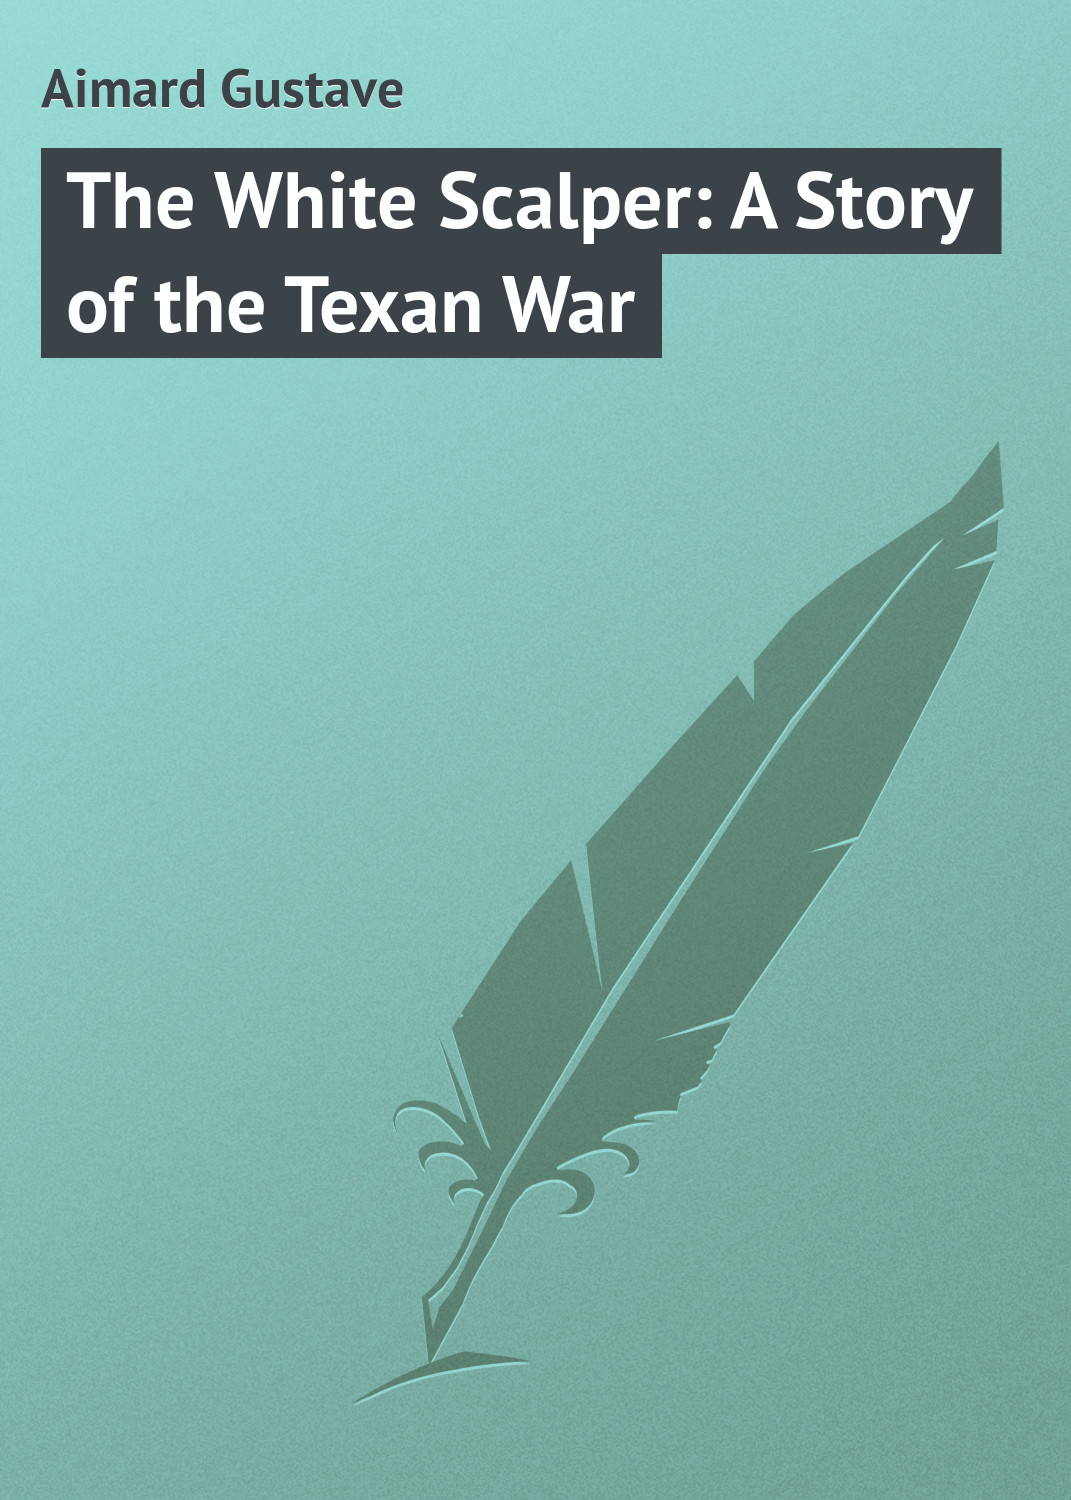 Книга The White Scalper: A Story of the Texan War из серии , созданная Gustave Aimard, может относится к жанру Иностранные языки, Зарубежная классика. Стоимость электронной книги The White Scalper: A Story of the Texan War с идентификатором 23153251 составляет 5.99 руб.